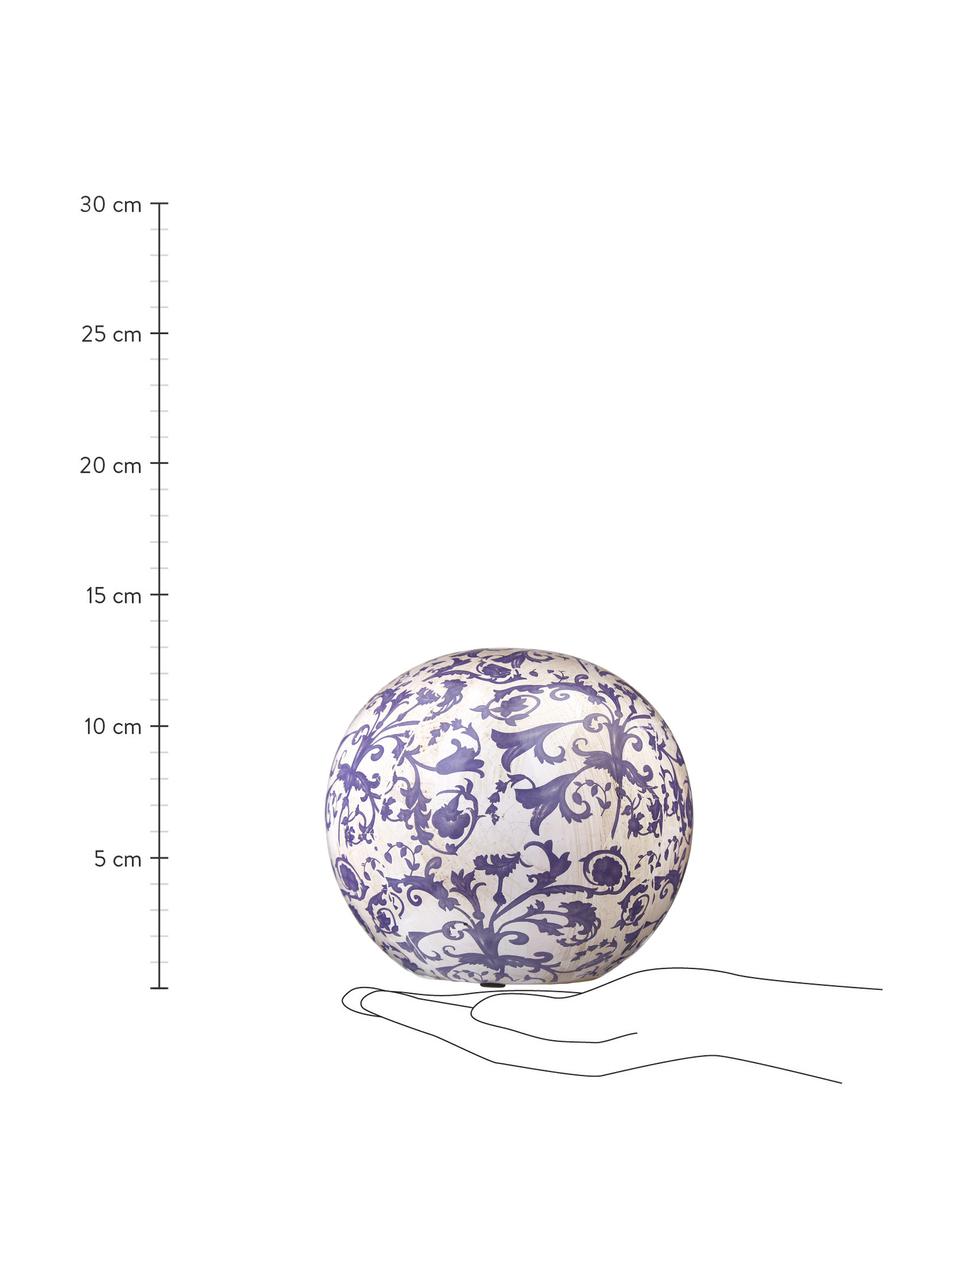 Oggetto decorativo in ceramica Cerino, Ceramica, Lilla, bianco, Ø 13 x Alt. 13 cm